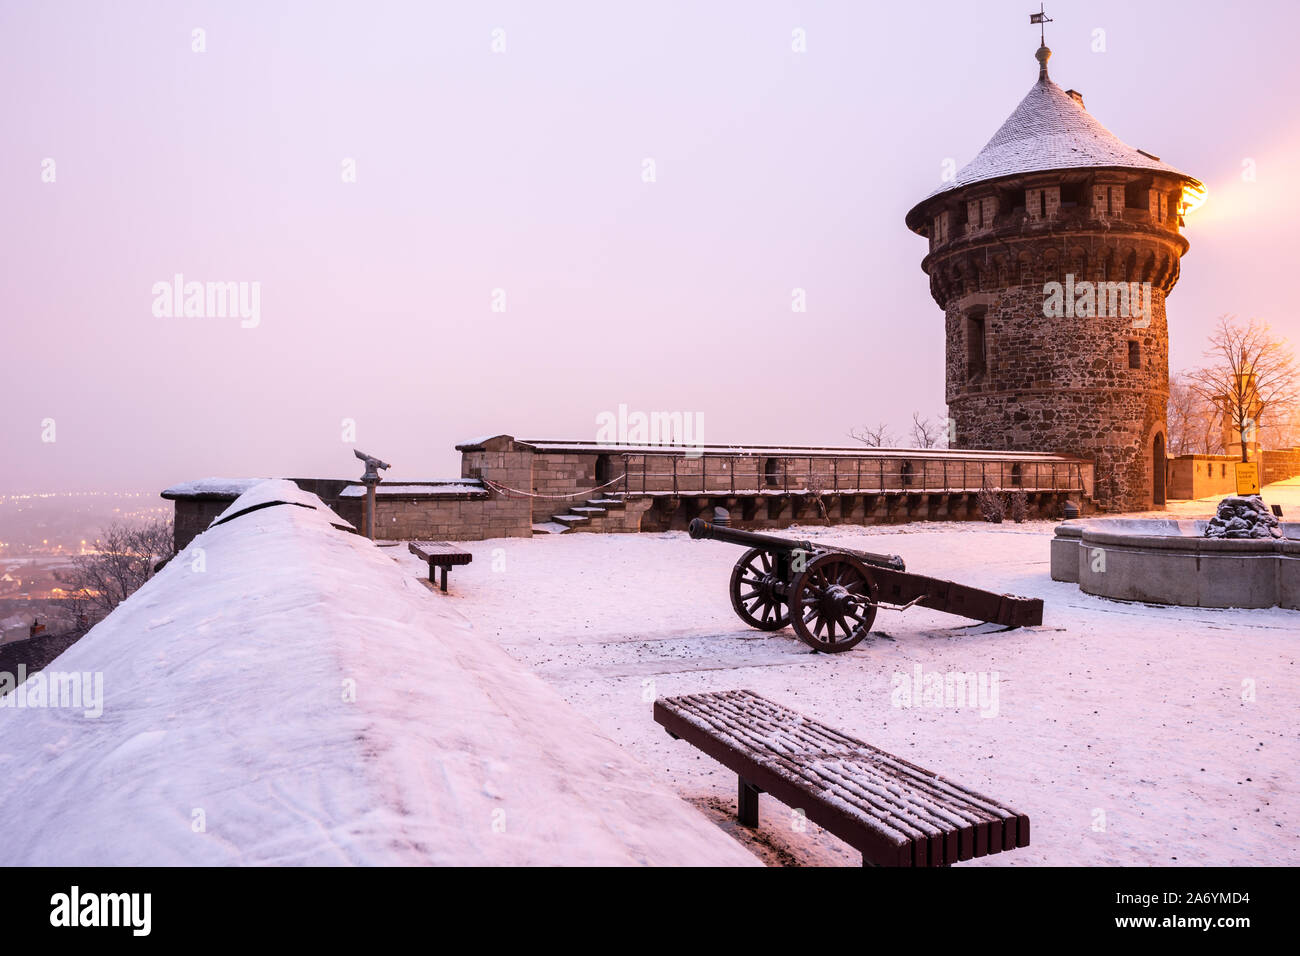 Viste di Chateau La terrazza e il ristorante con storici cannoni. Wernigerode in inverno, di notte e in caso di neve Foto Stock